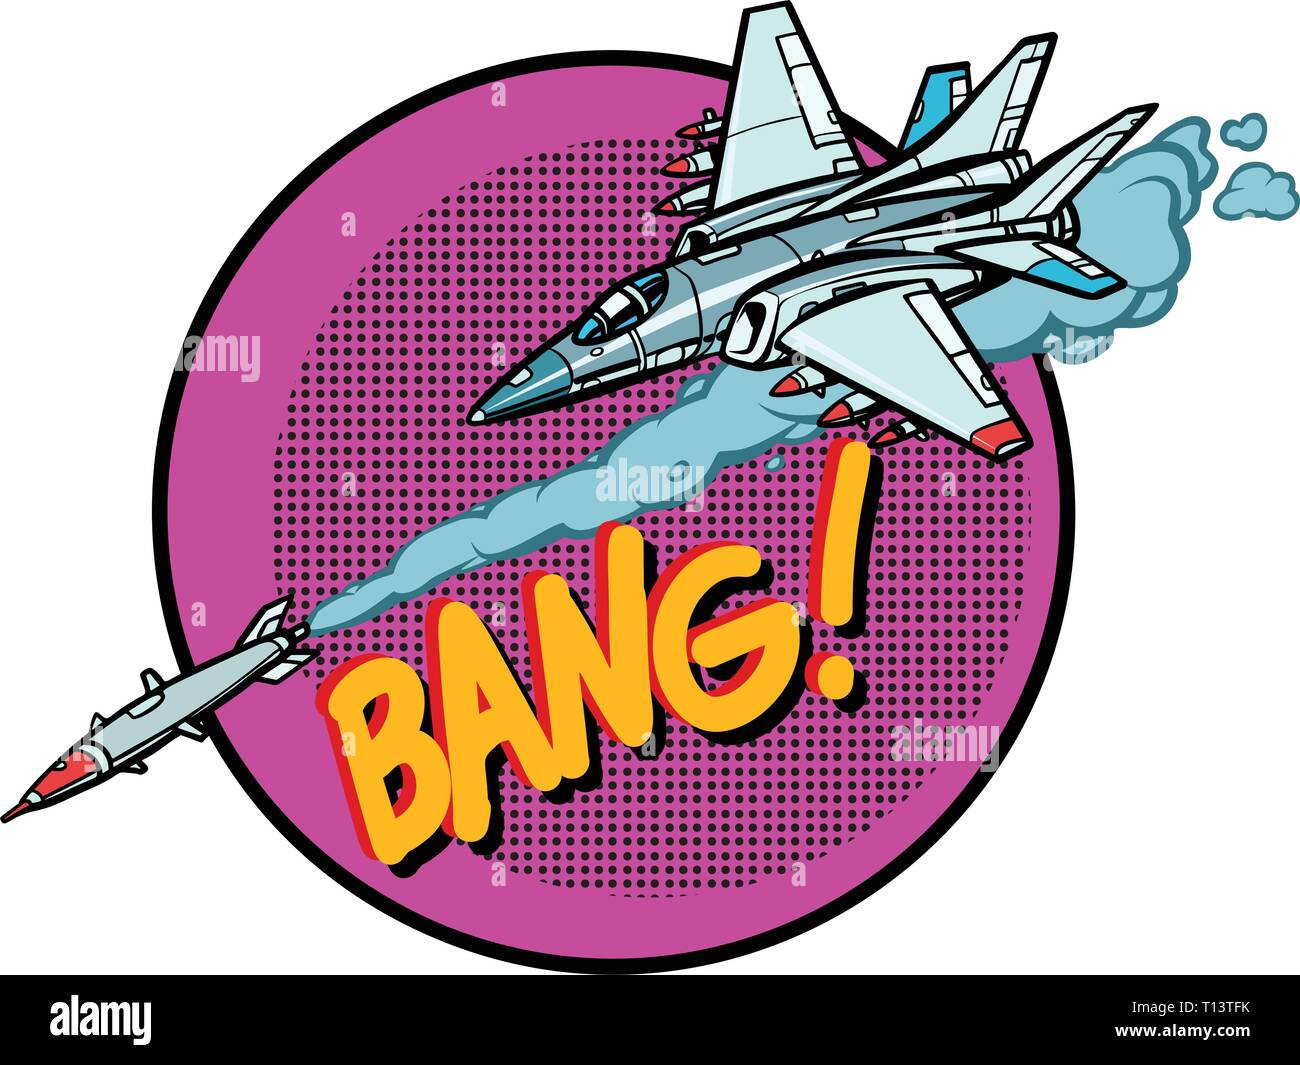 Aerei militari attaccato dal missile, army Air force Illustrazione Vettoriale